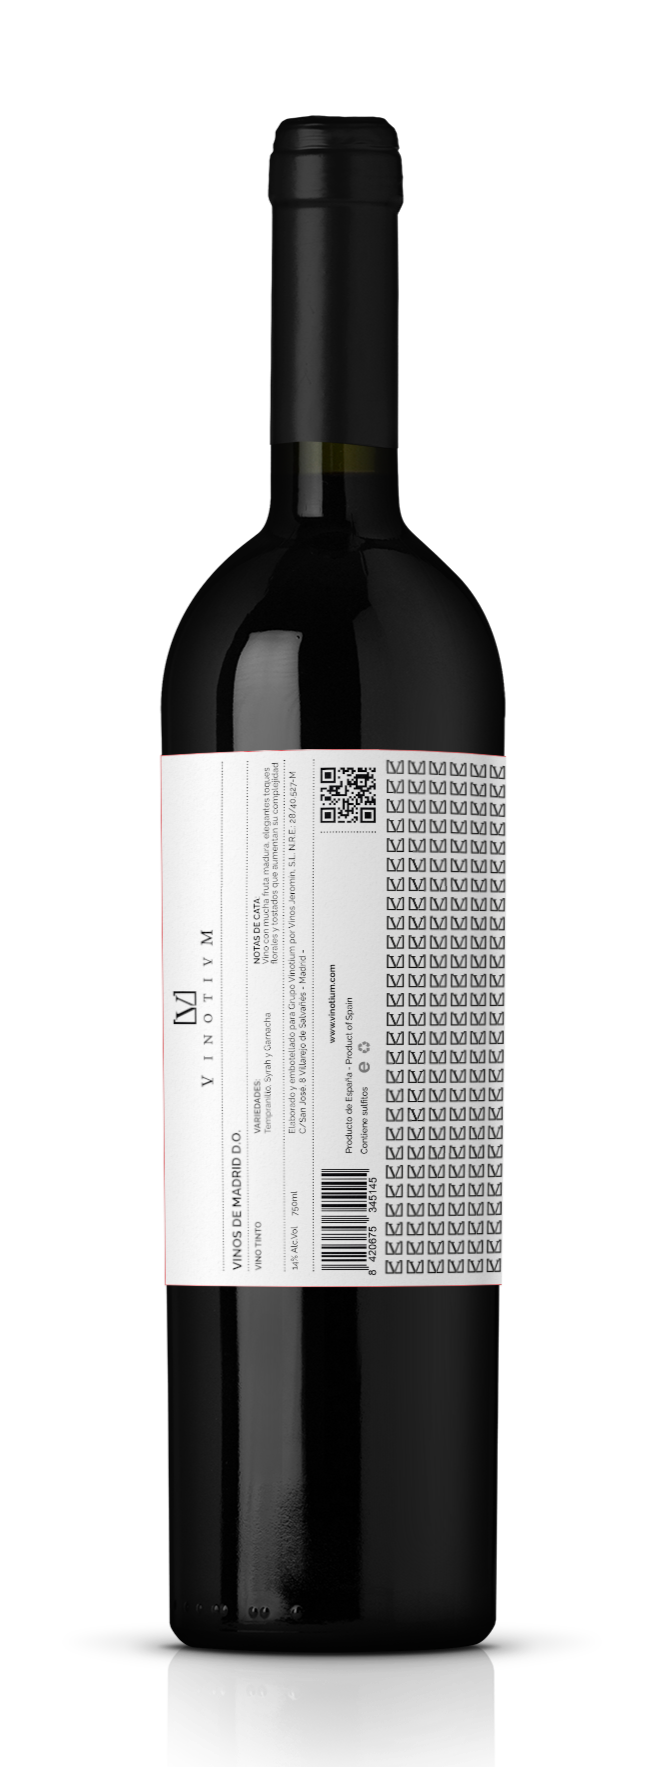 vinotium tinto vinos de madrid